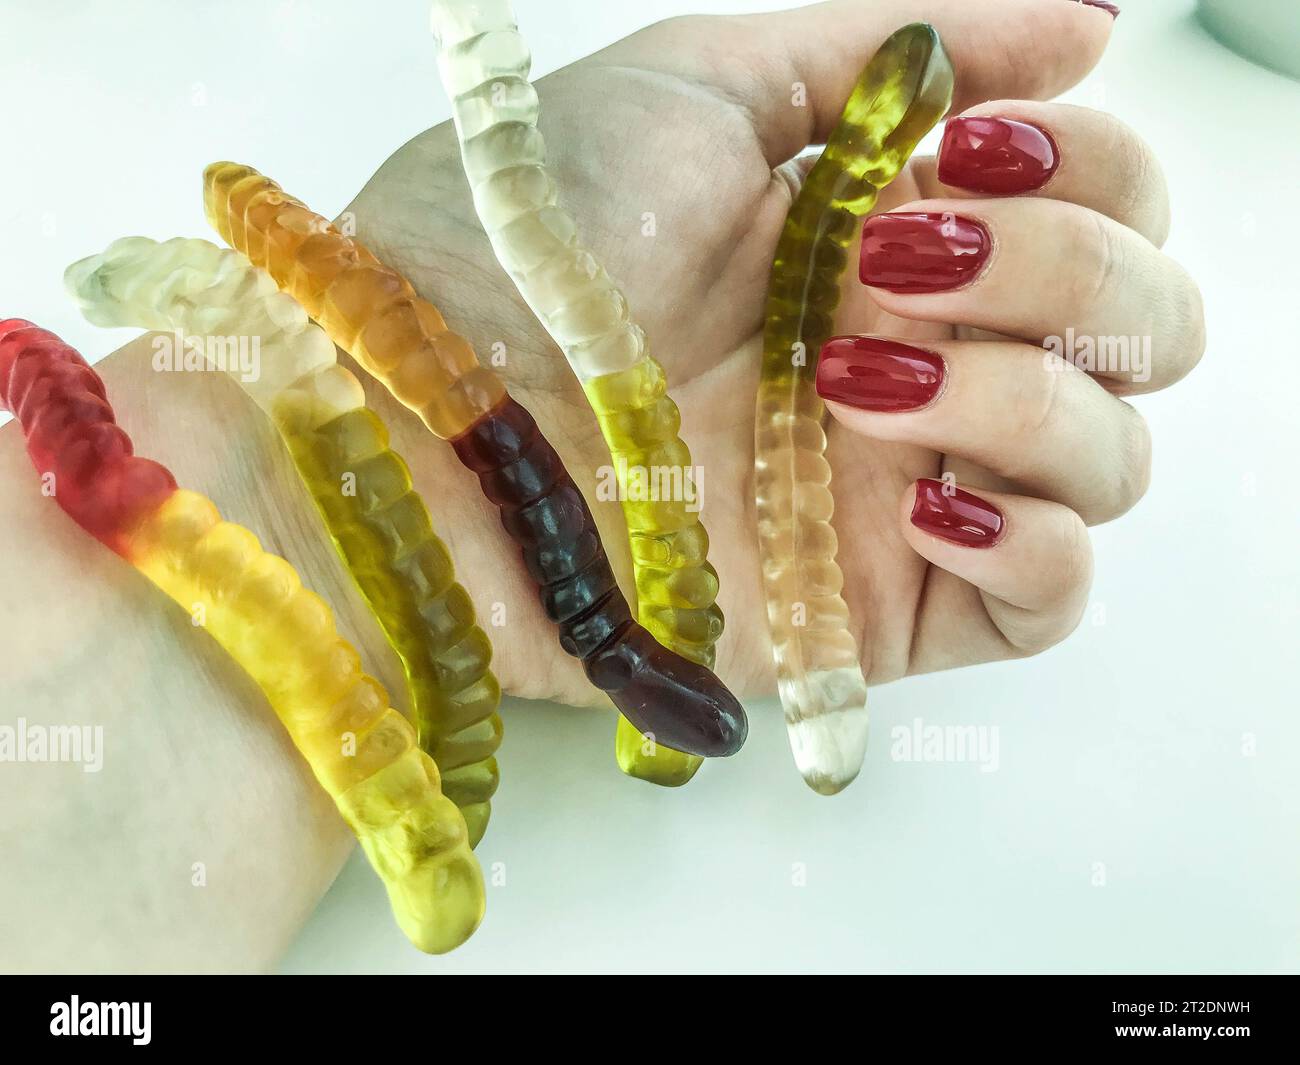 Viele Gummiwürmer liegen auf der Hand des Mädchens. Helle, rote, glänzende Maniküre. Gelatinöse Würmer liegen in Ihrer Handfläche. Süßes Dessert, Hand eines Pas Stockfoto